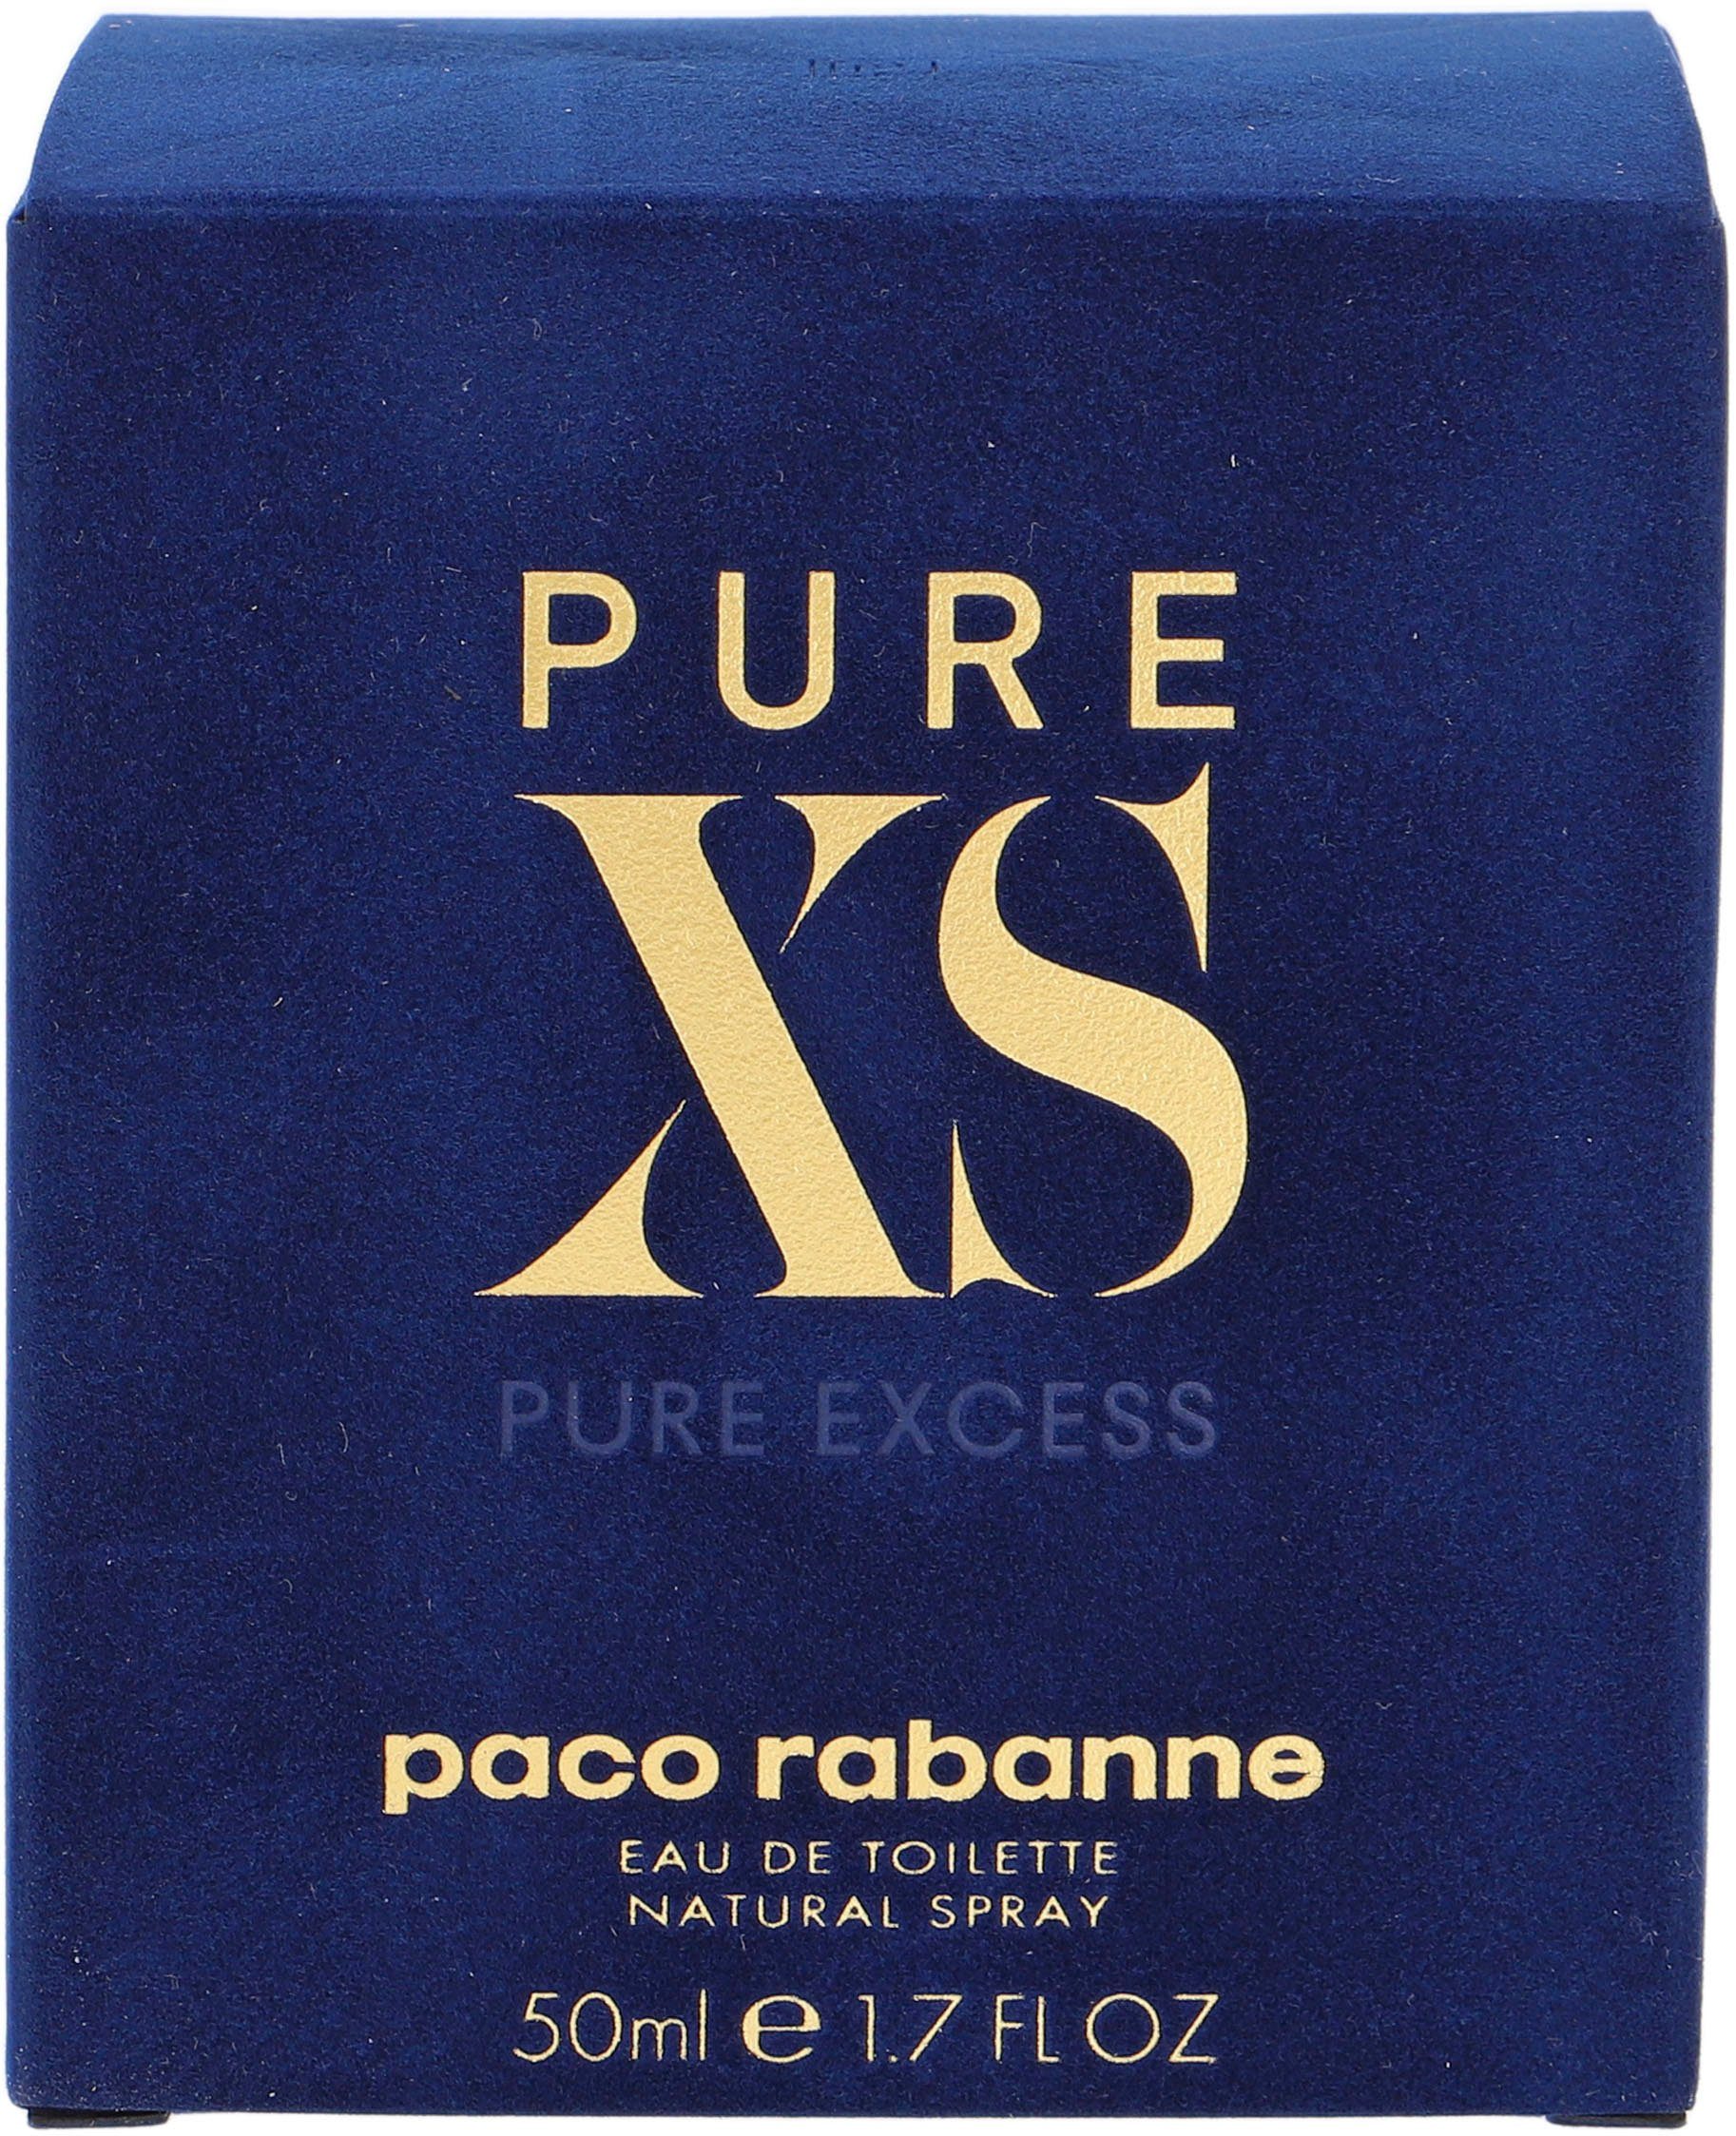 paco rabanne Eau Toilette Paco Rabanne de XS Pure